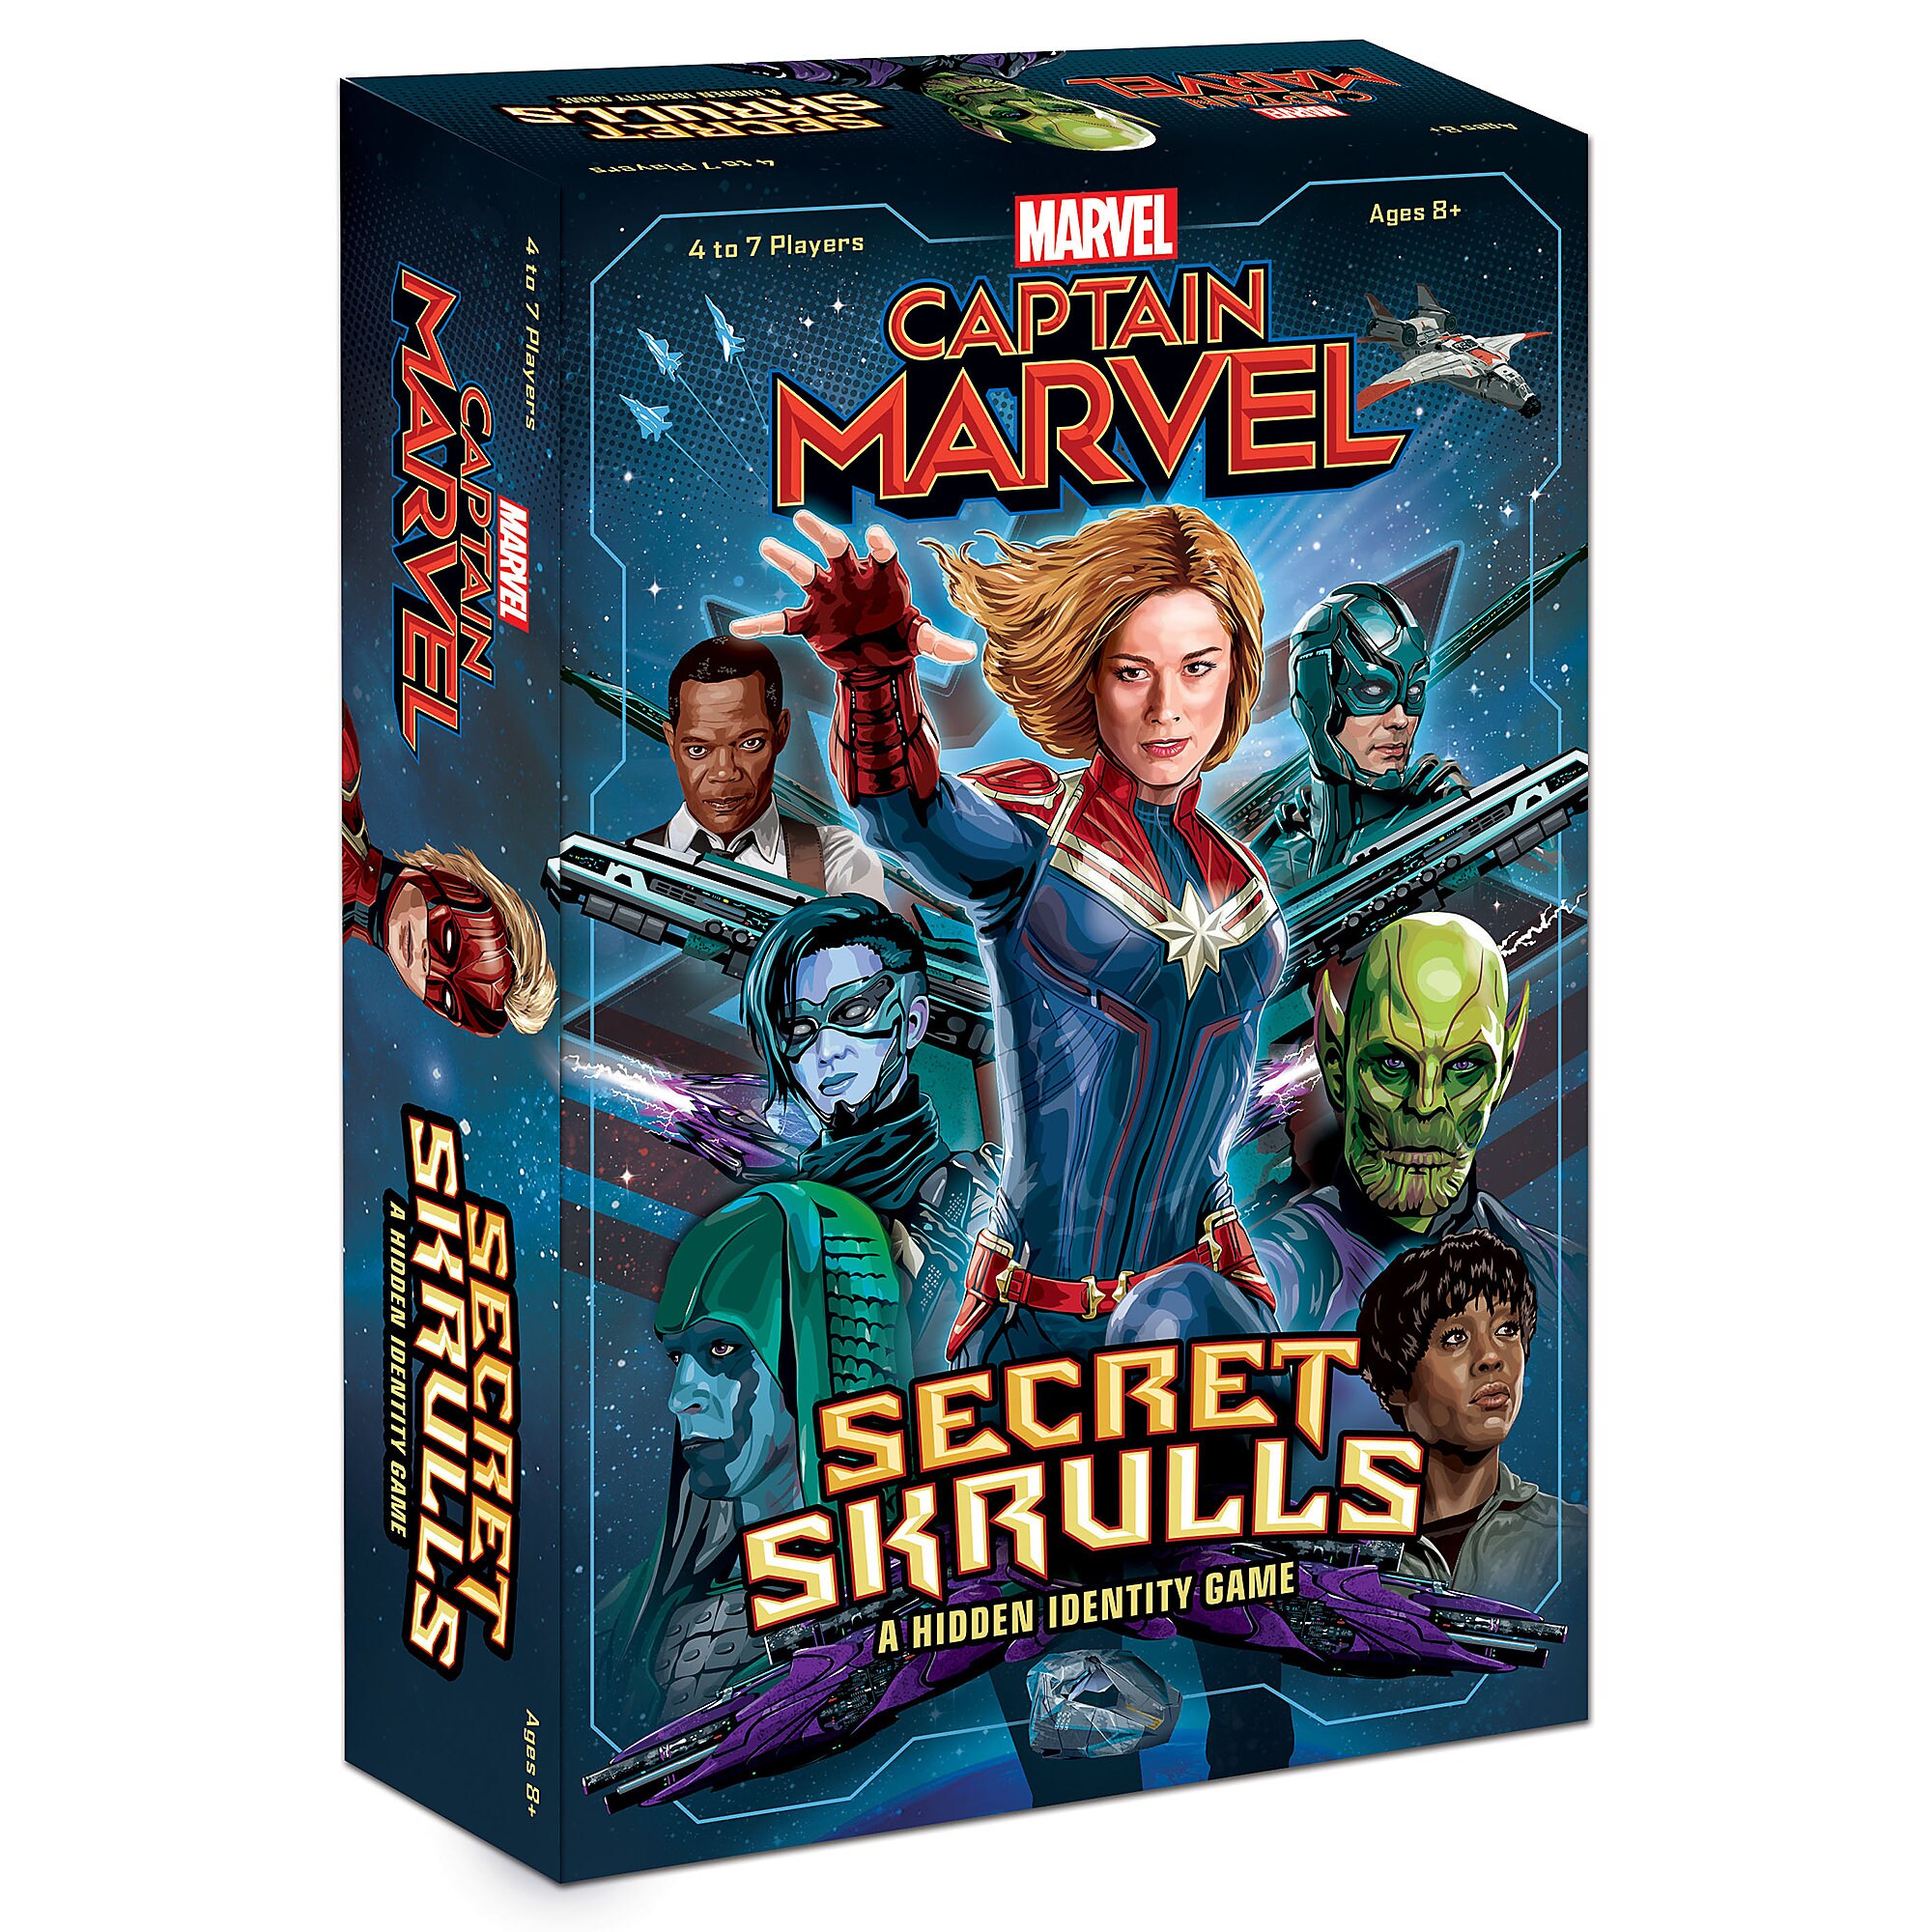 Marvel's Captain Marvel: Secret Skrulls Game